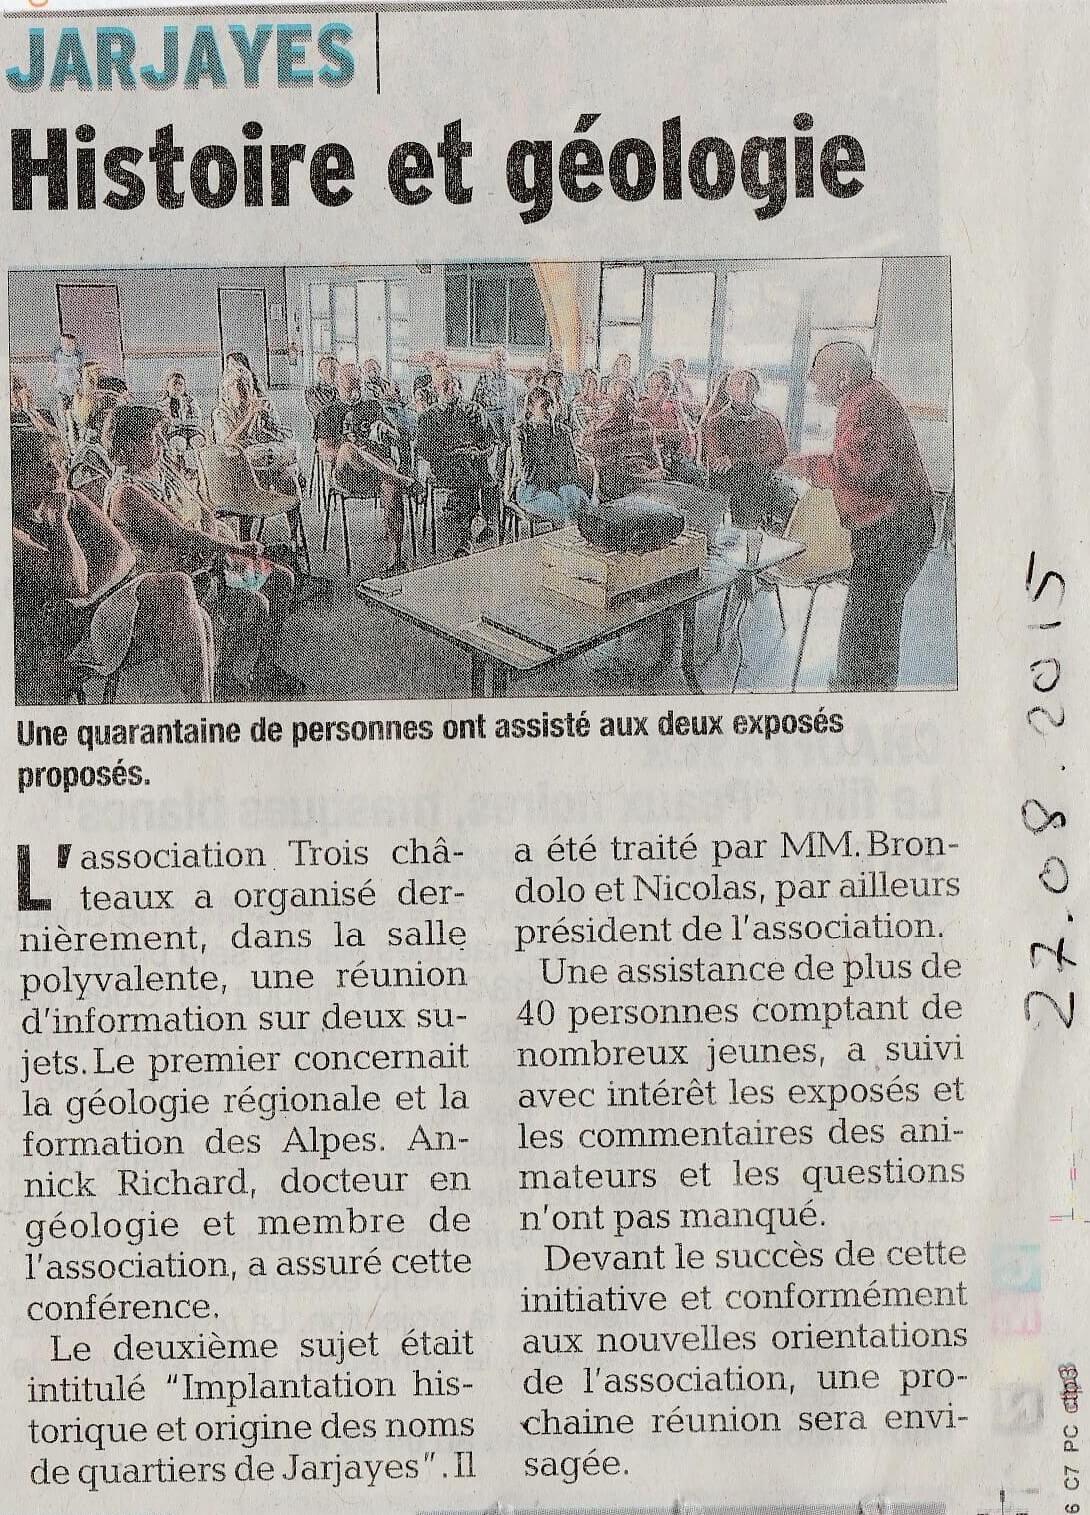 Jarjayes 3C article Dauphiné Libéré du 27/08/2015